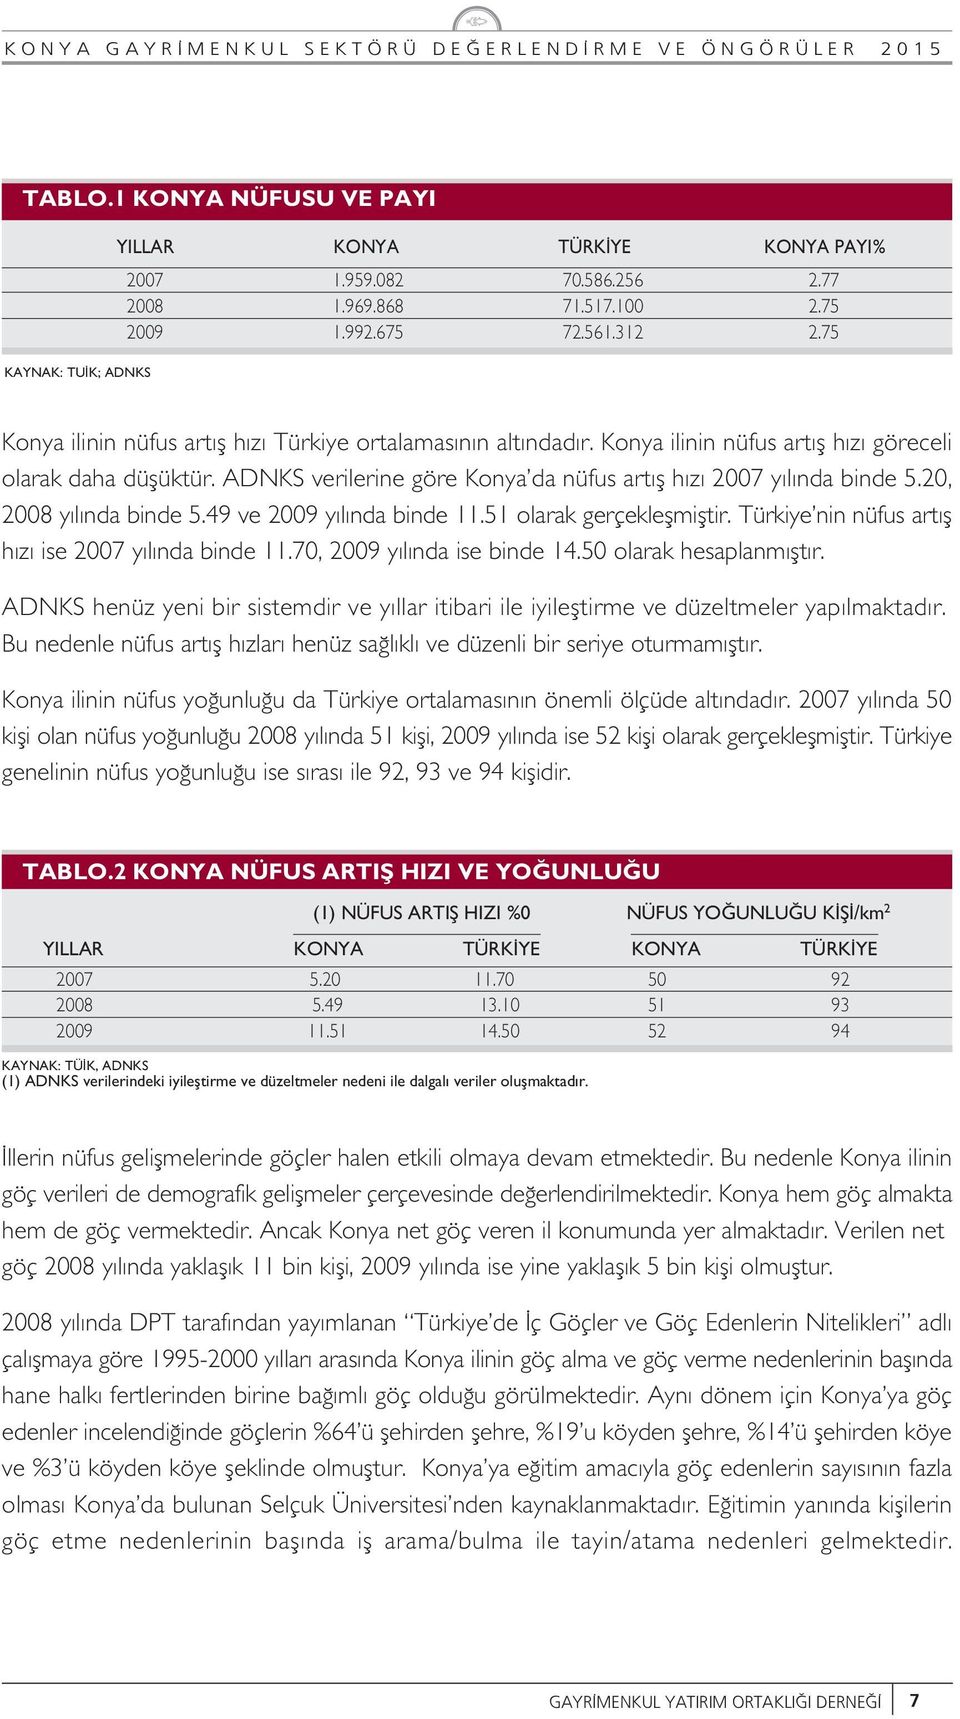 20, 2008 y l nda binde 5.49 ve 2009 y l nda binde 11.51 olarak gerçekleflmifltir. Türkiye nin nüfus art fl h z ise 2007 y l nda binde 11.70, 2009 y l nda ise binde 14.50 olarak hesaplanm flt r.